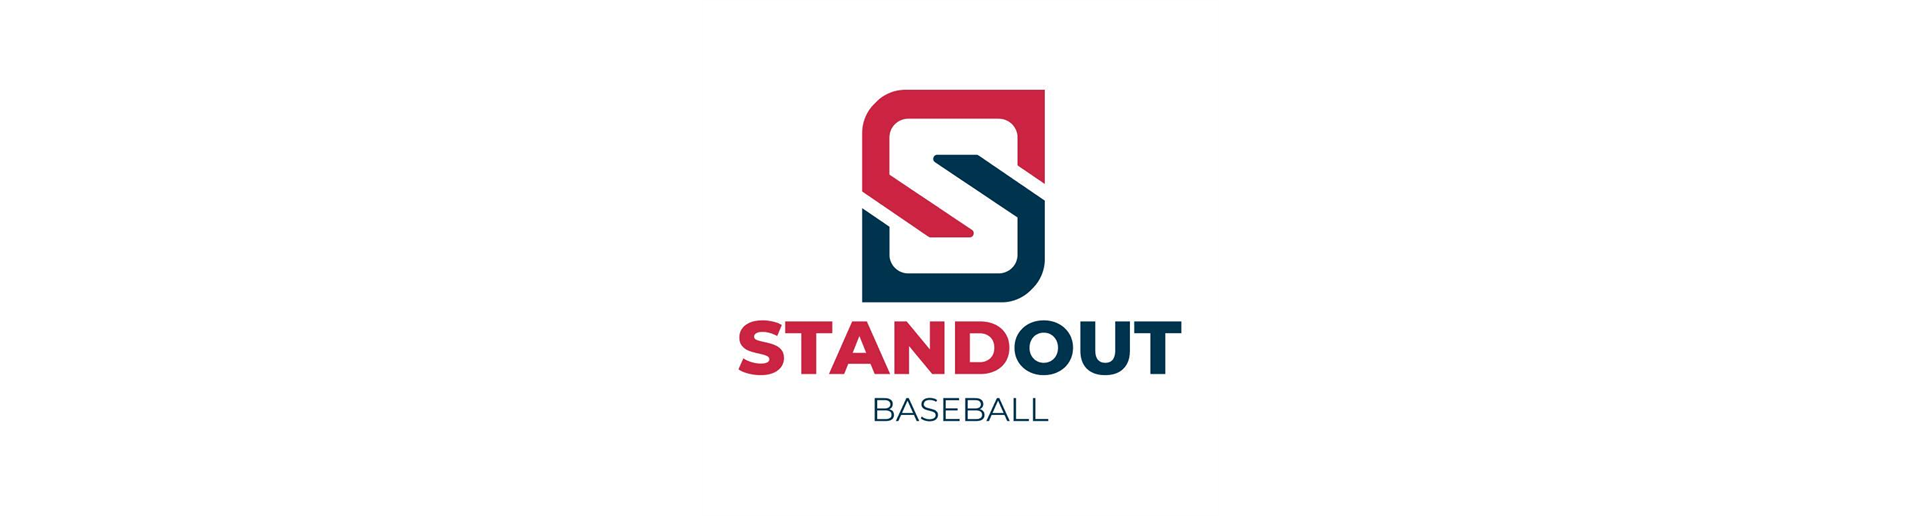 Standout Baseball 